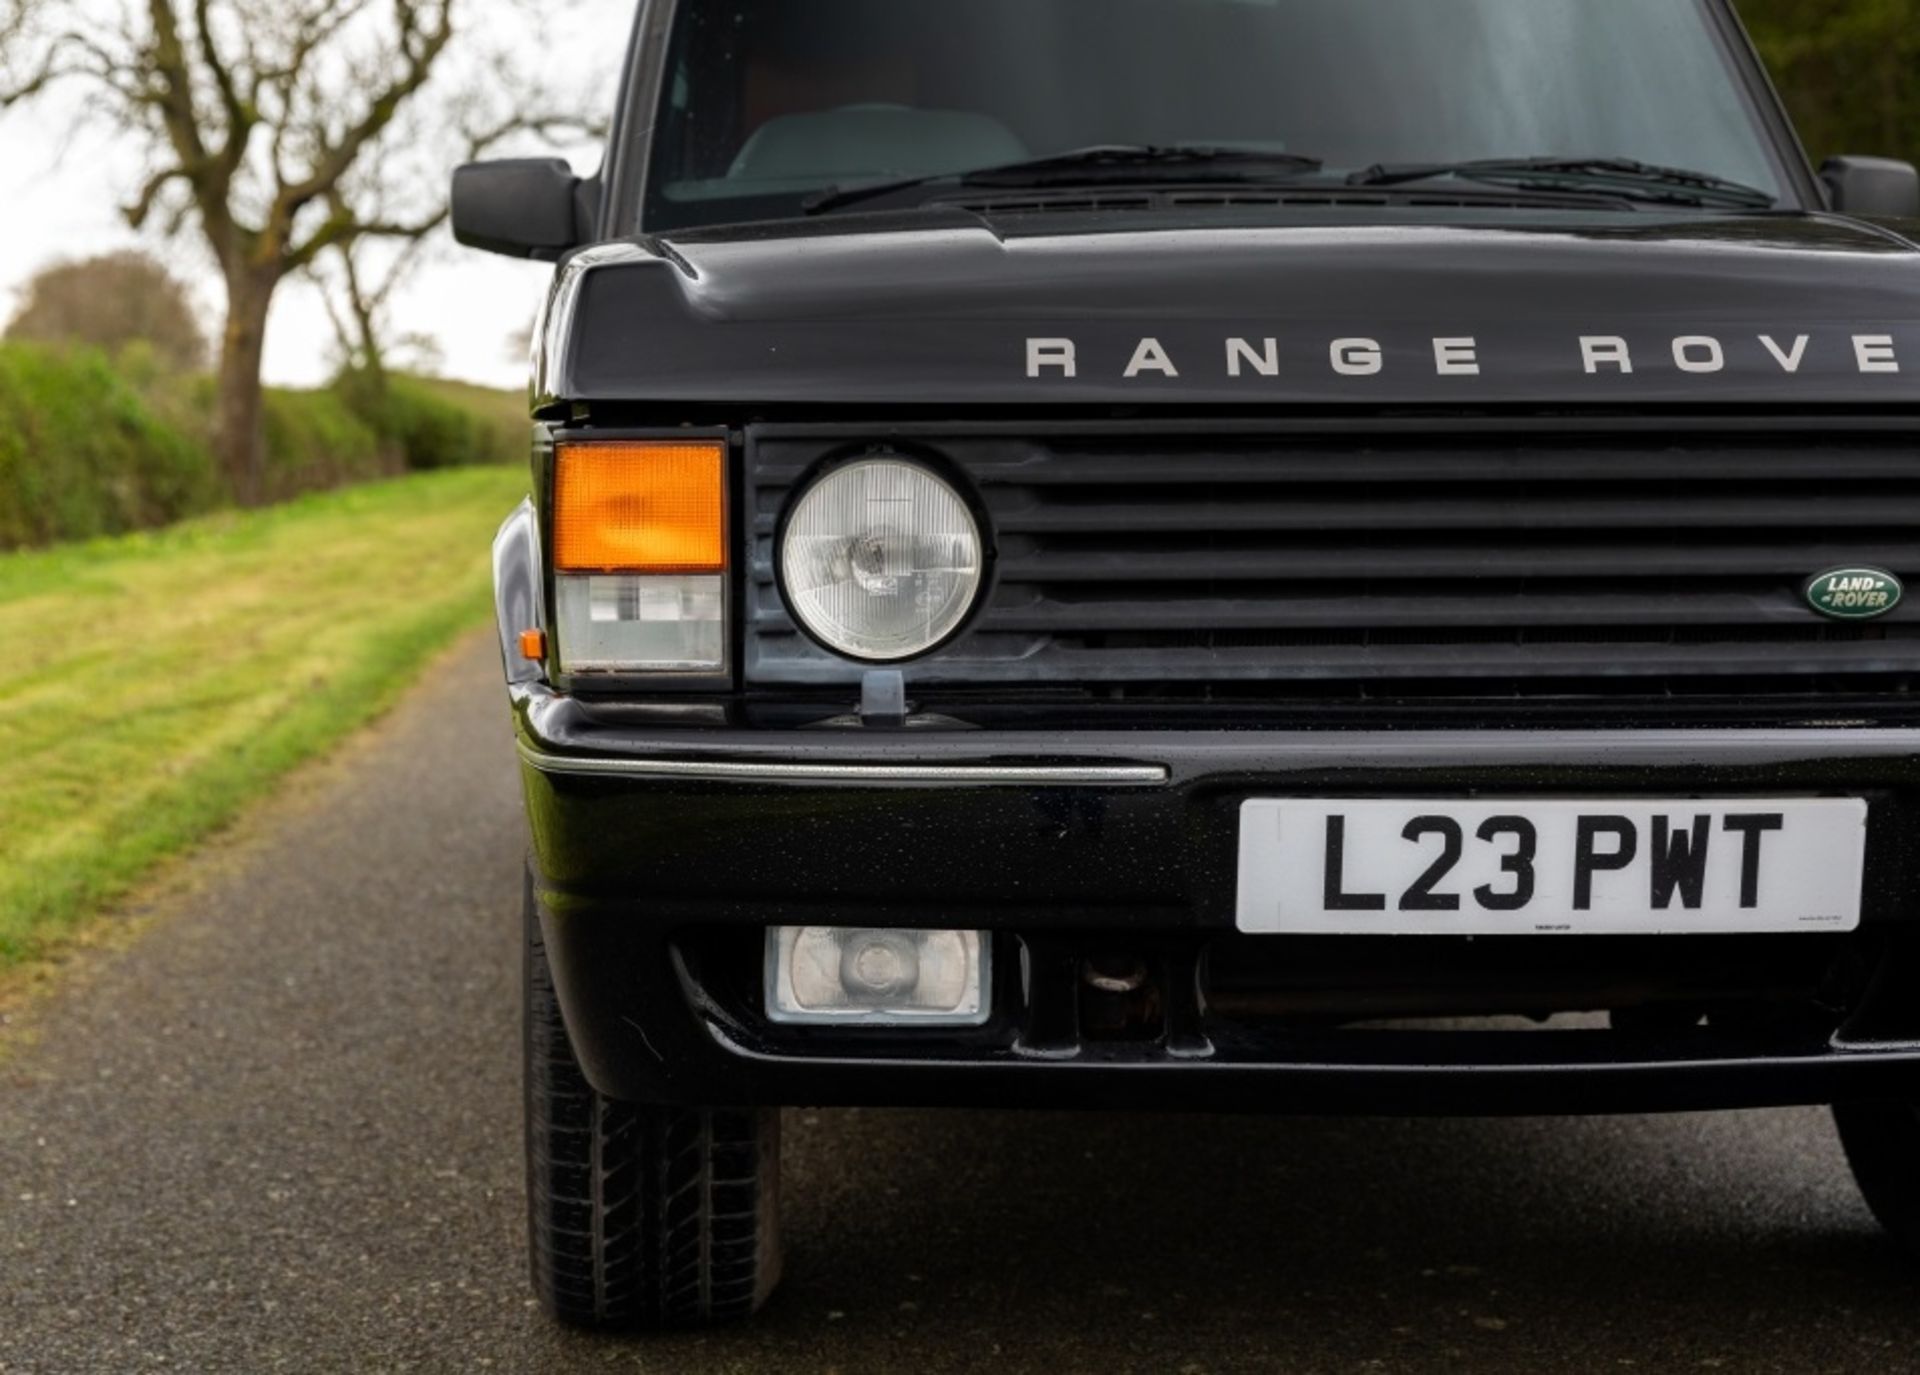 1994 Range Rover Vogue LSE 4.3 V8 Limousine - Image 37 of 80